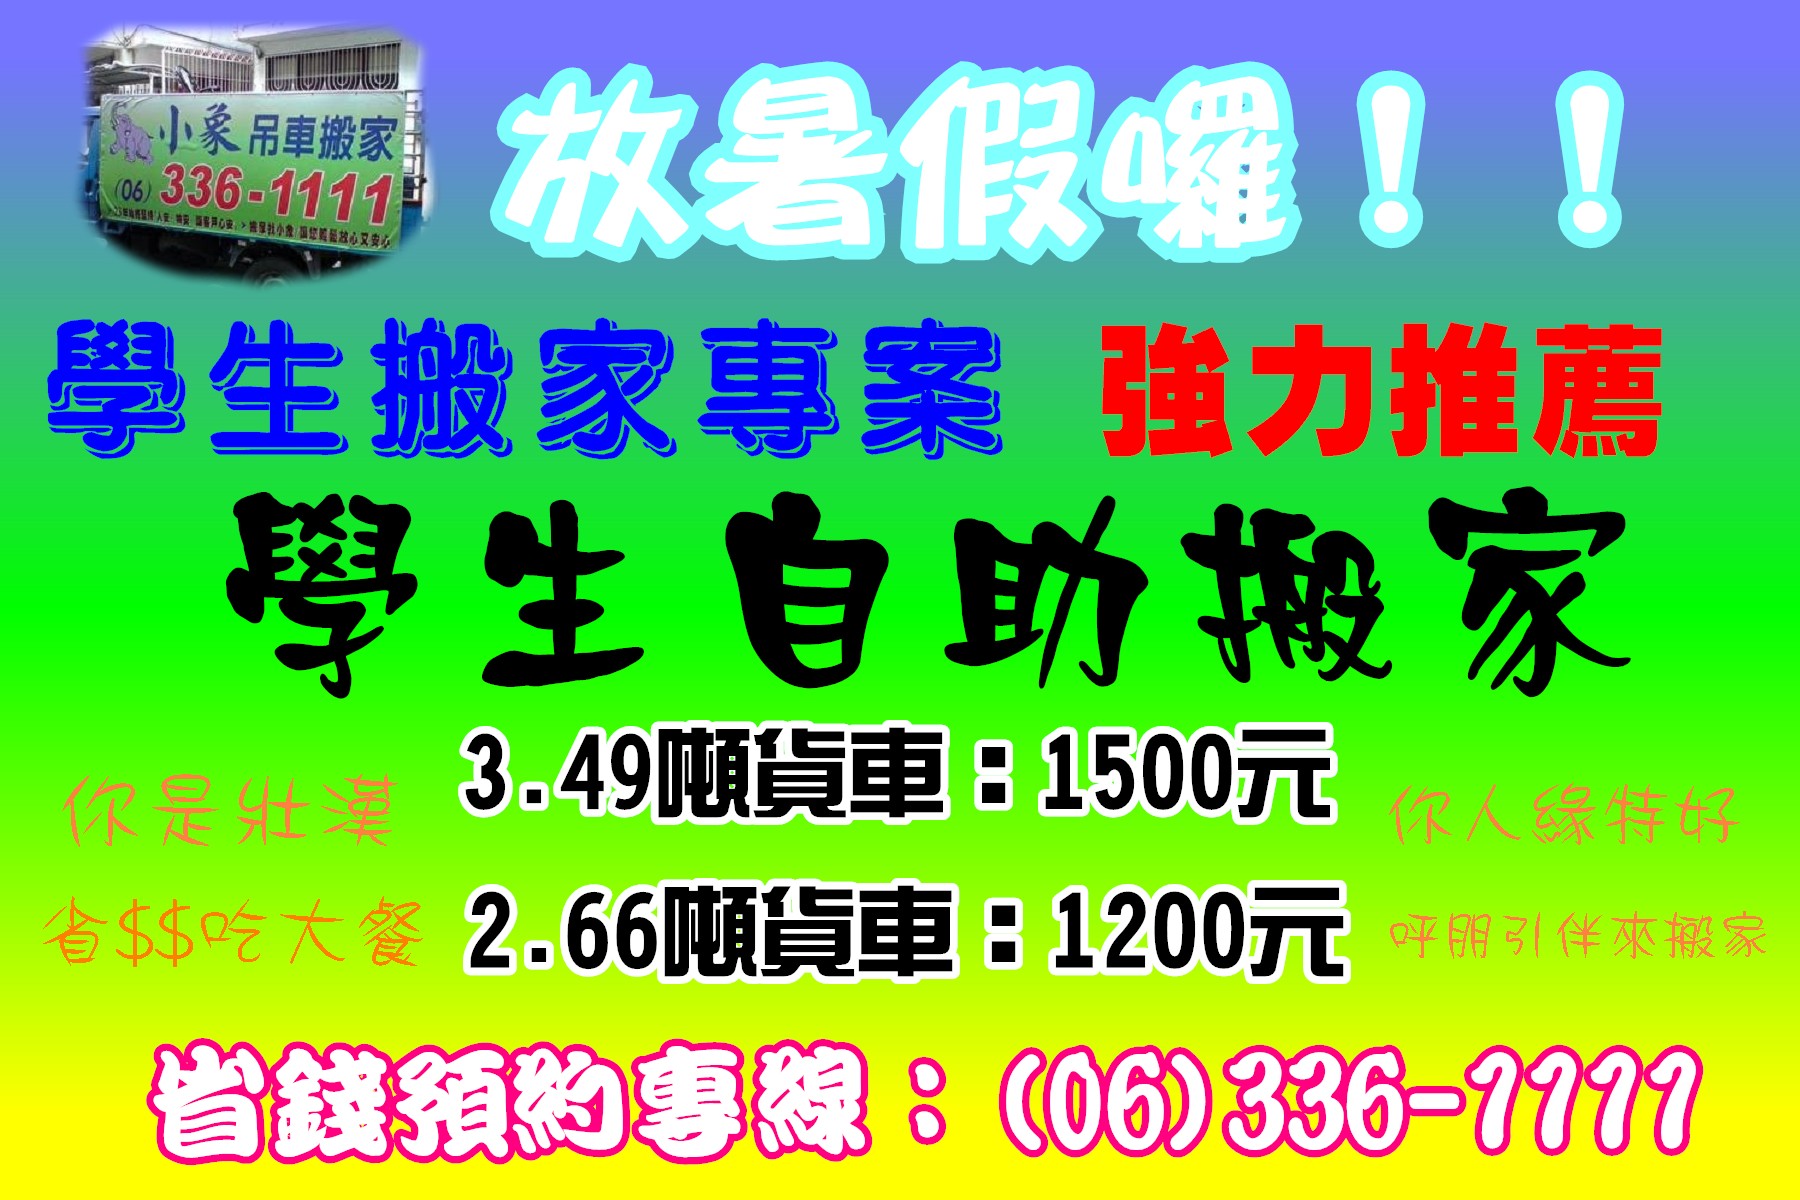 台南專業搬家公司 - 20141124101848-796121671.jpg(圖)